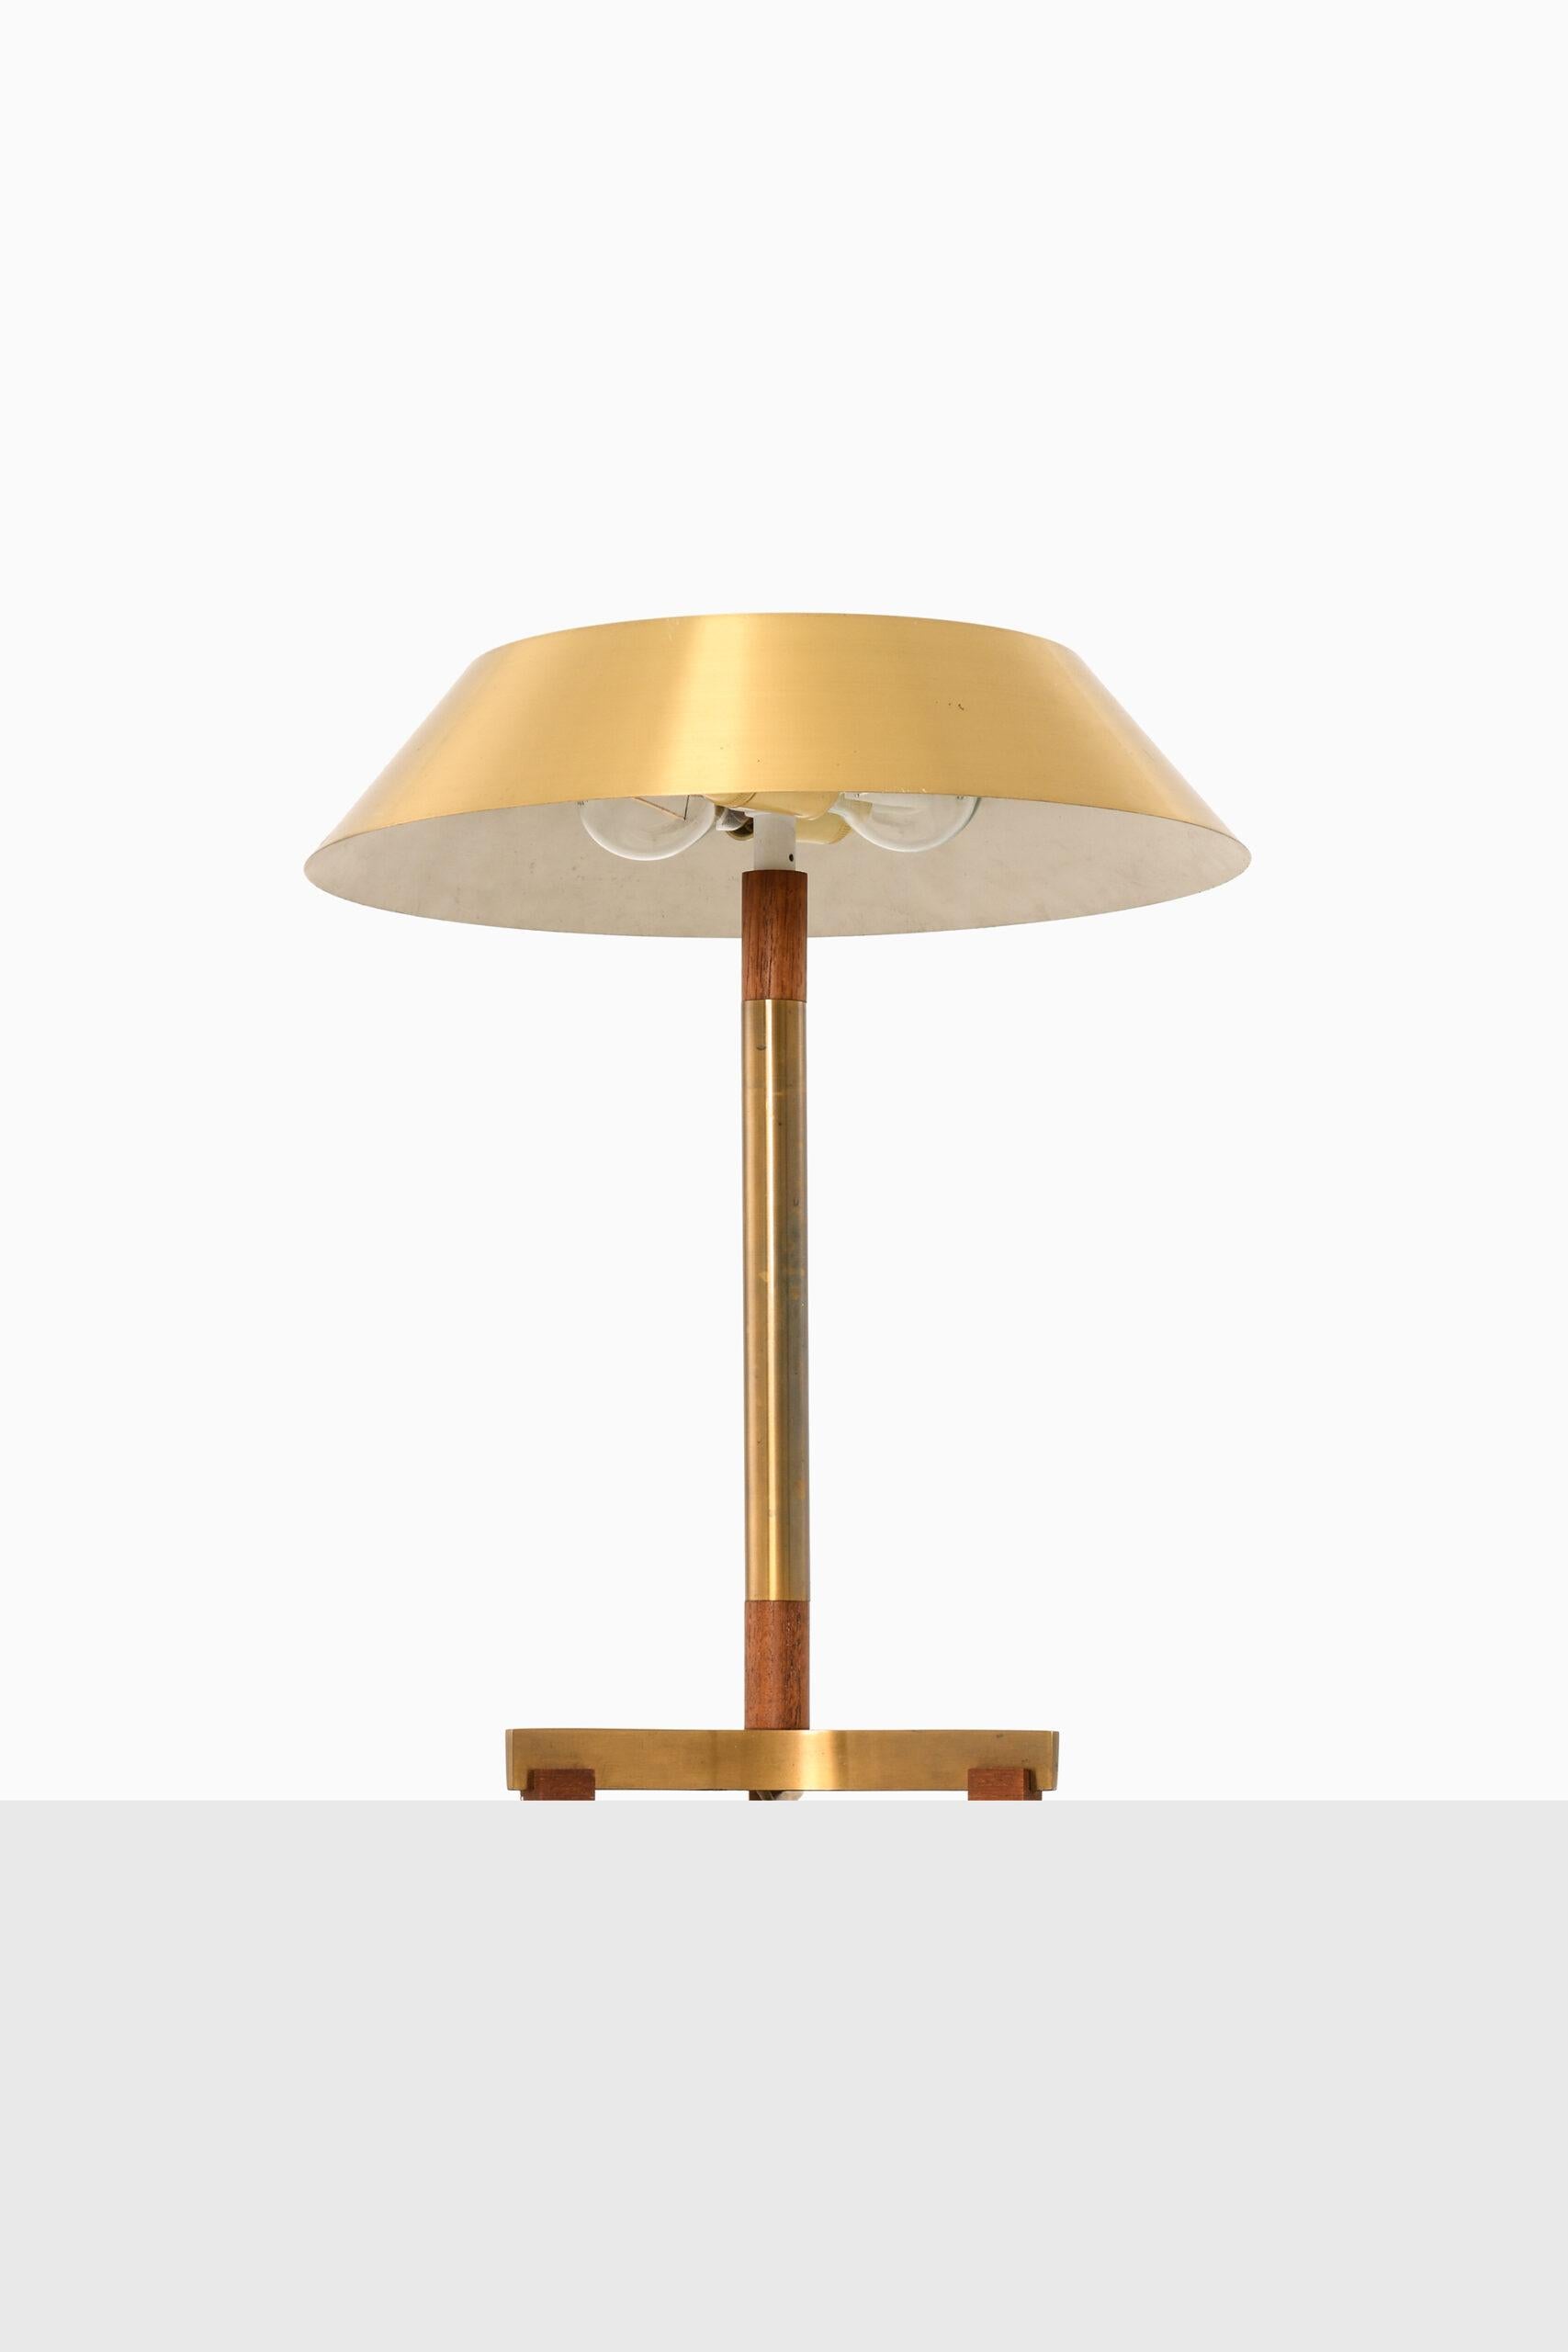 Rare lampe de table modèle President conçue par Jo Hammerborg. Produit par Fog & Mørup au Danemark.